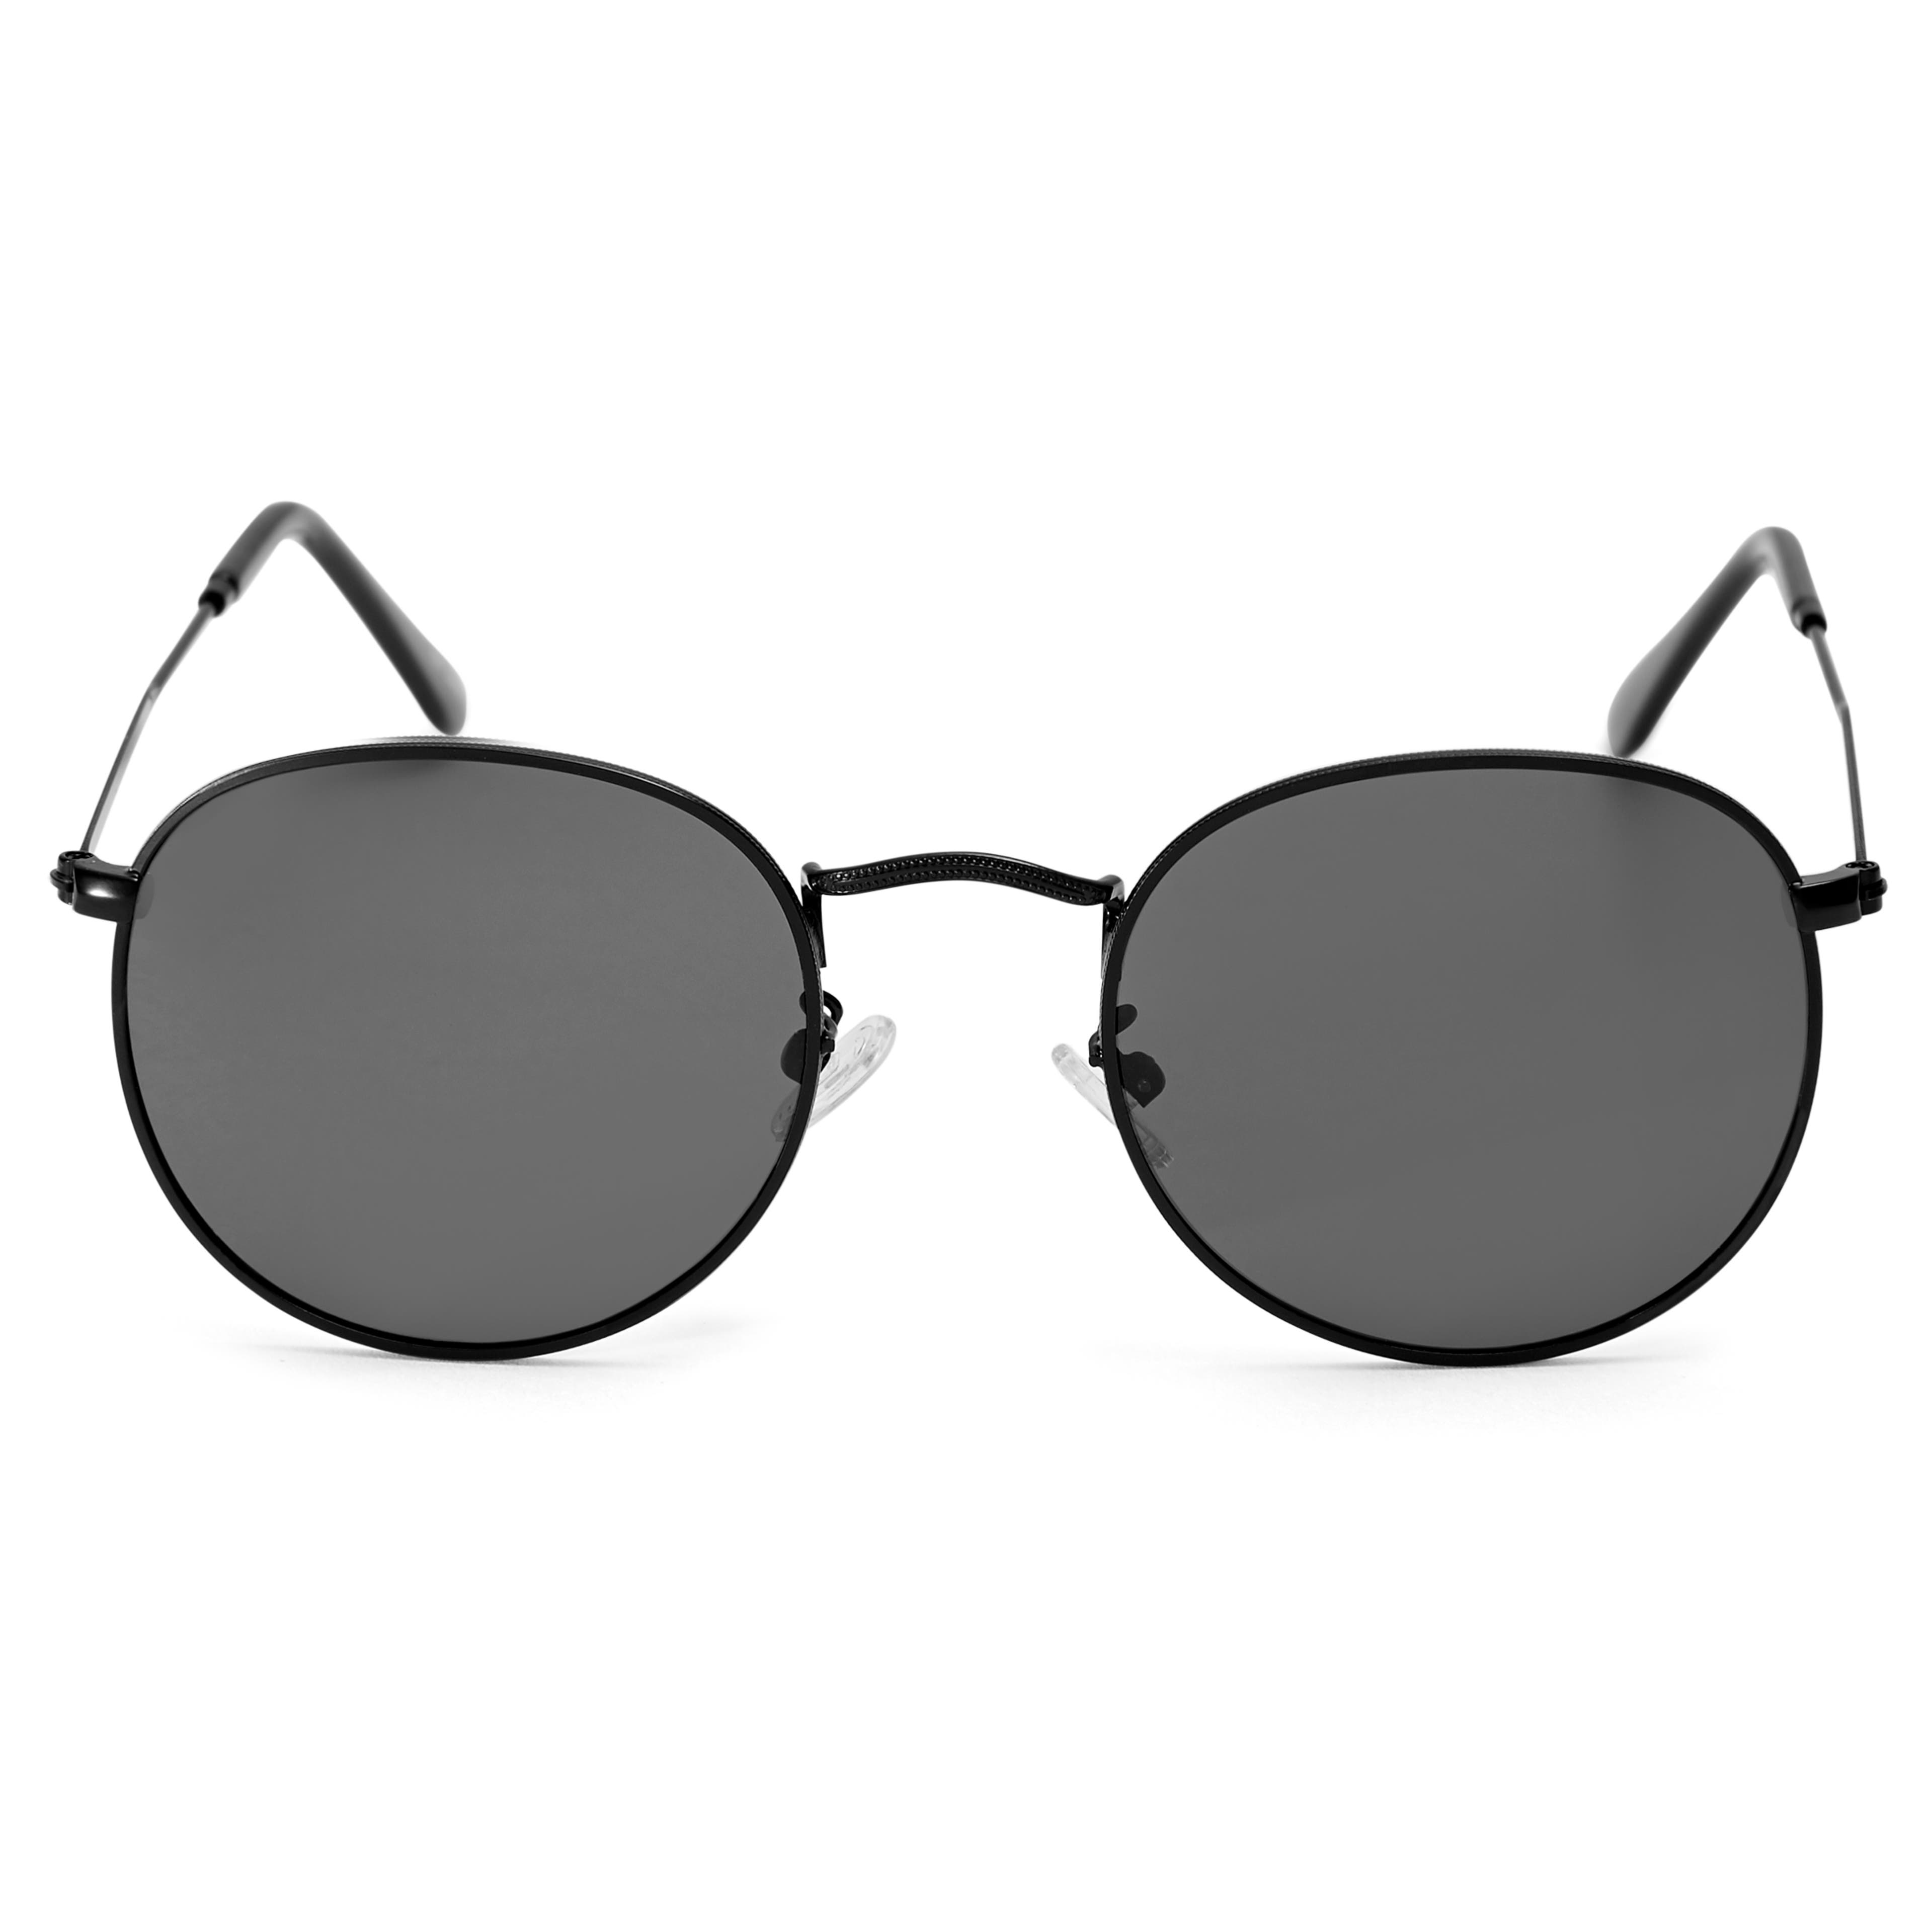 Dandysowe całkowcie czarne spolaryzowane okulary przeciwsłoneczne